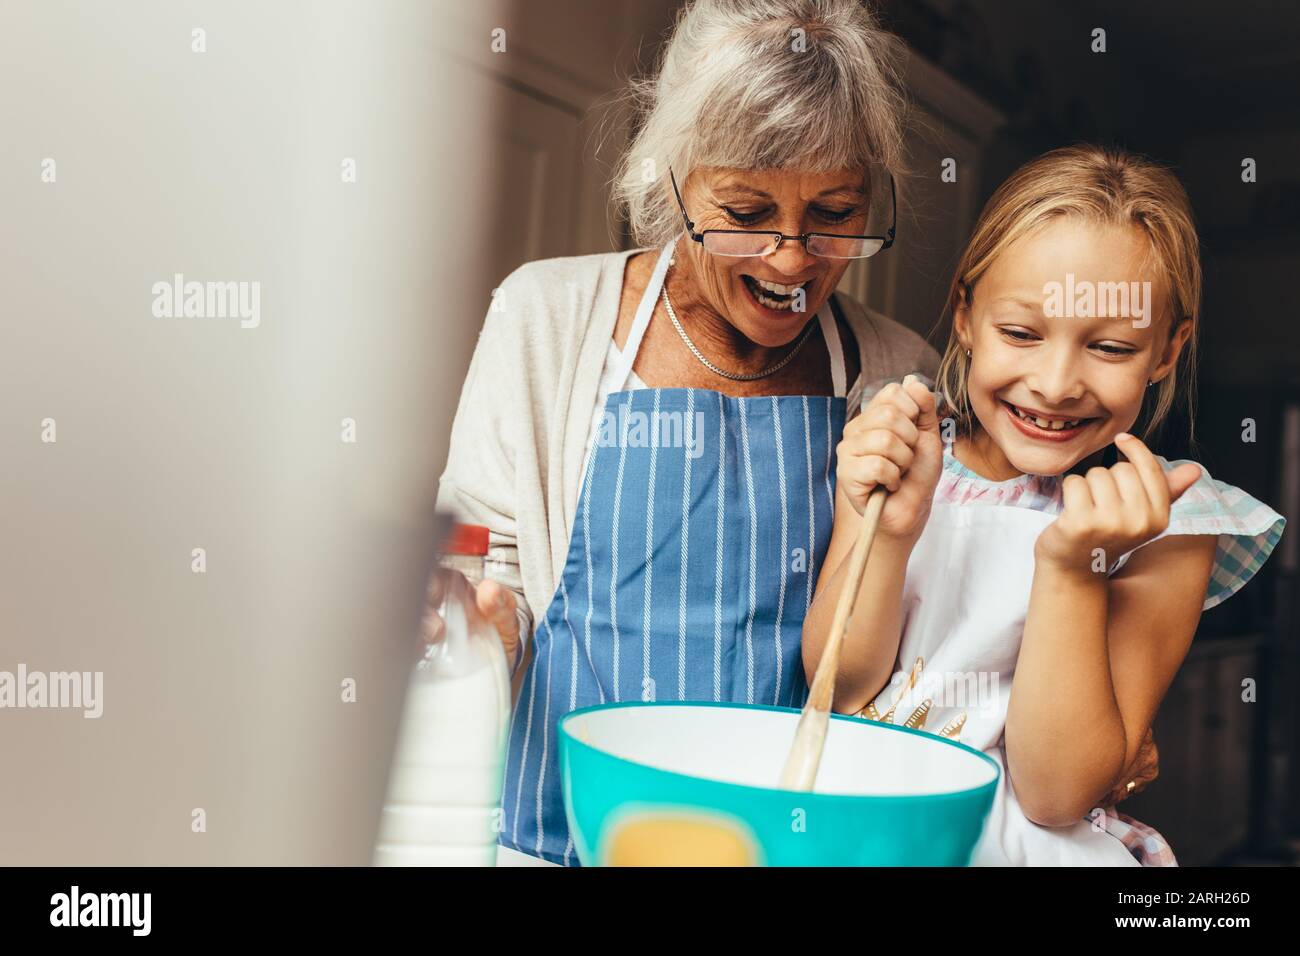 Glückliche Großmutter und Kind, die einen Kuchenteig zu Hause mischten. Fröhliches kleines Mädchen, das den Teig in einer Schüssel rührte, wobei ihre Granny an ihrer Seite stand. Stockfoto